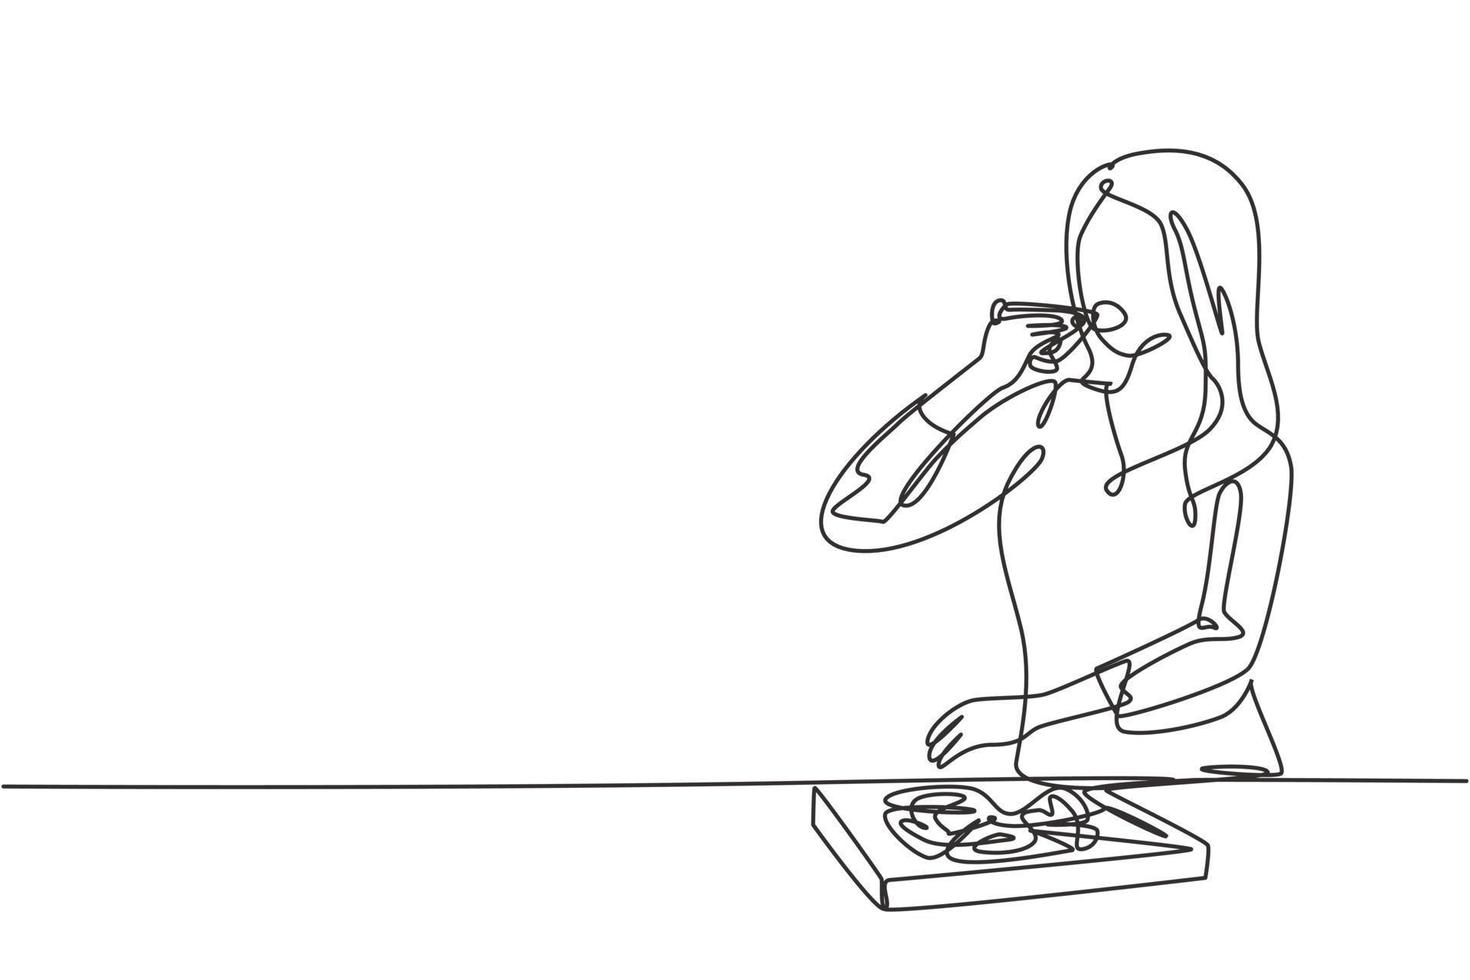 único desenho de linha jovem mulher comendo espaguete refeição com garfo. feliz e aproveite o almoço no restaurante. comida deliciosa e saudável. ilustração em vetor gráfico design moderno linha contínua